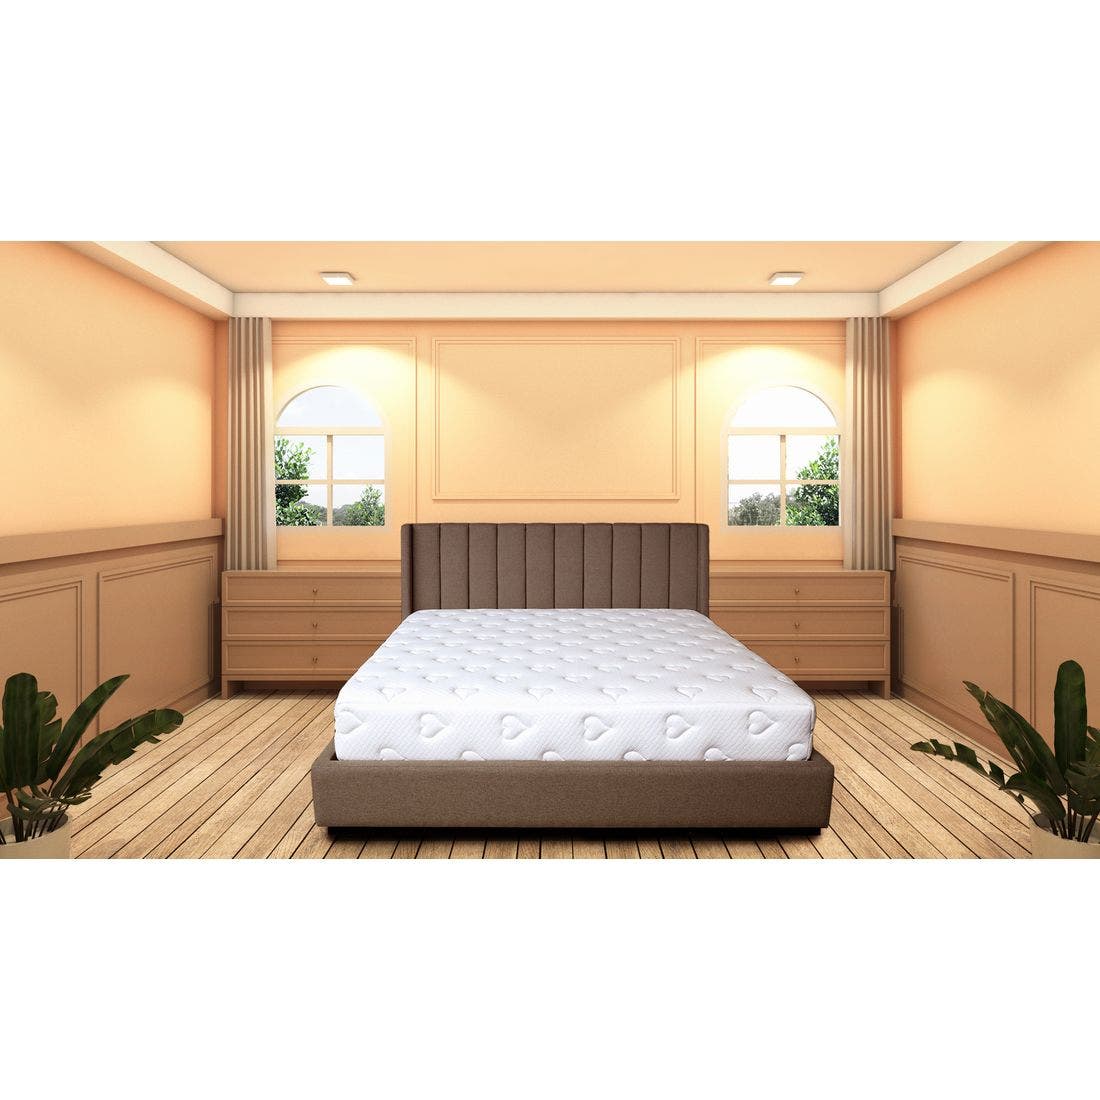 39015054-mattress-bedding-mattresses-pocket-spring-mattress-31